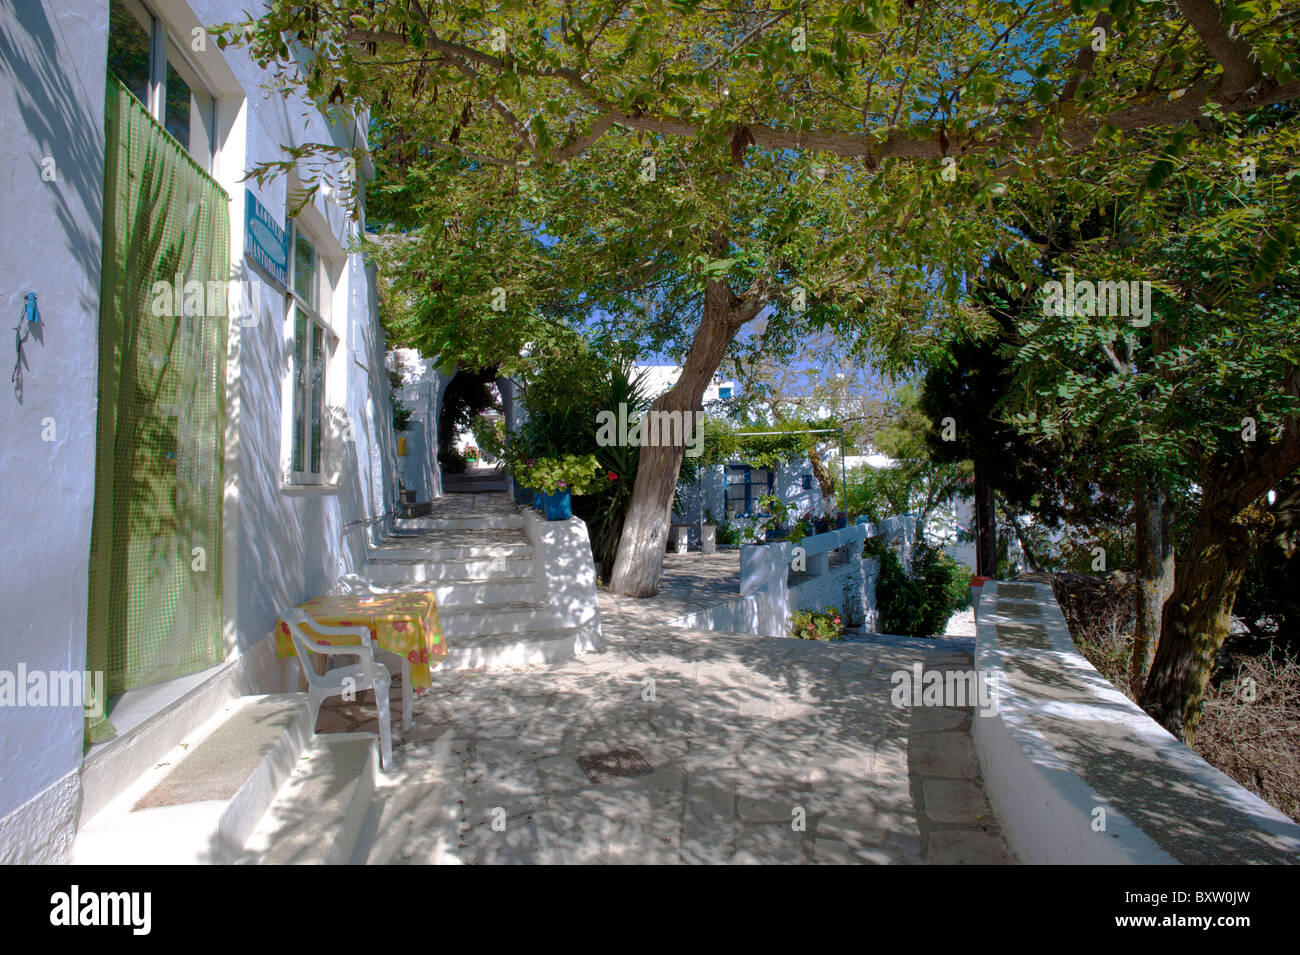 Deux quilles fusionner en face d'une taverne dans le village d'Arnados, sur l'île de Tinos Cyclades grecques. Banque D'Images